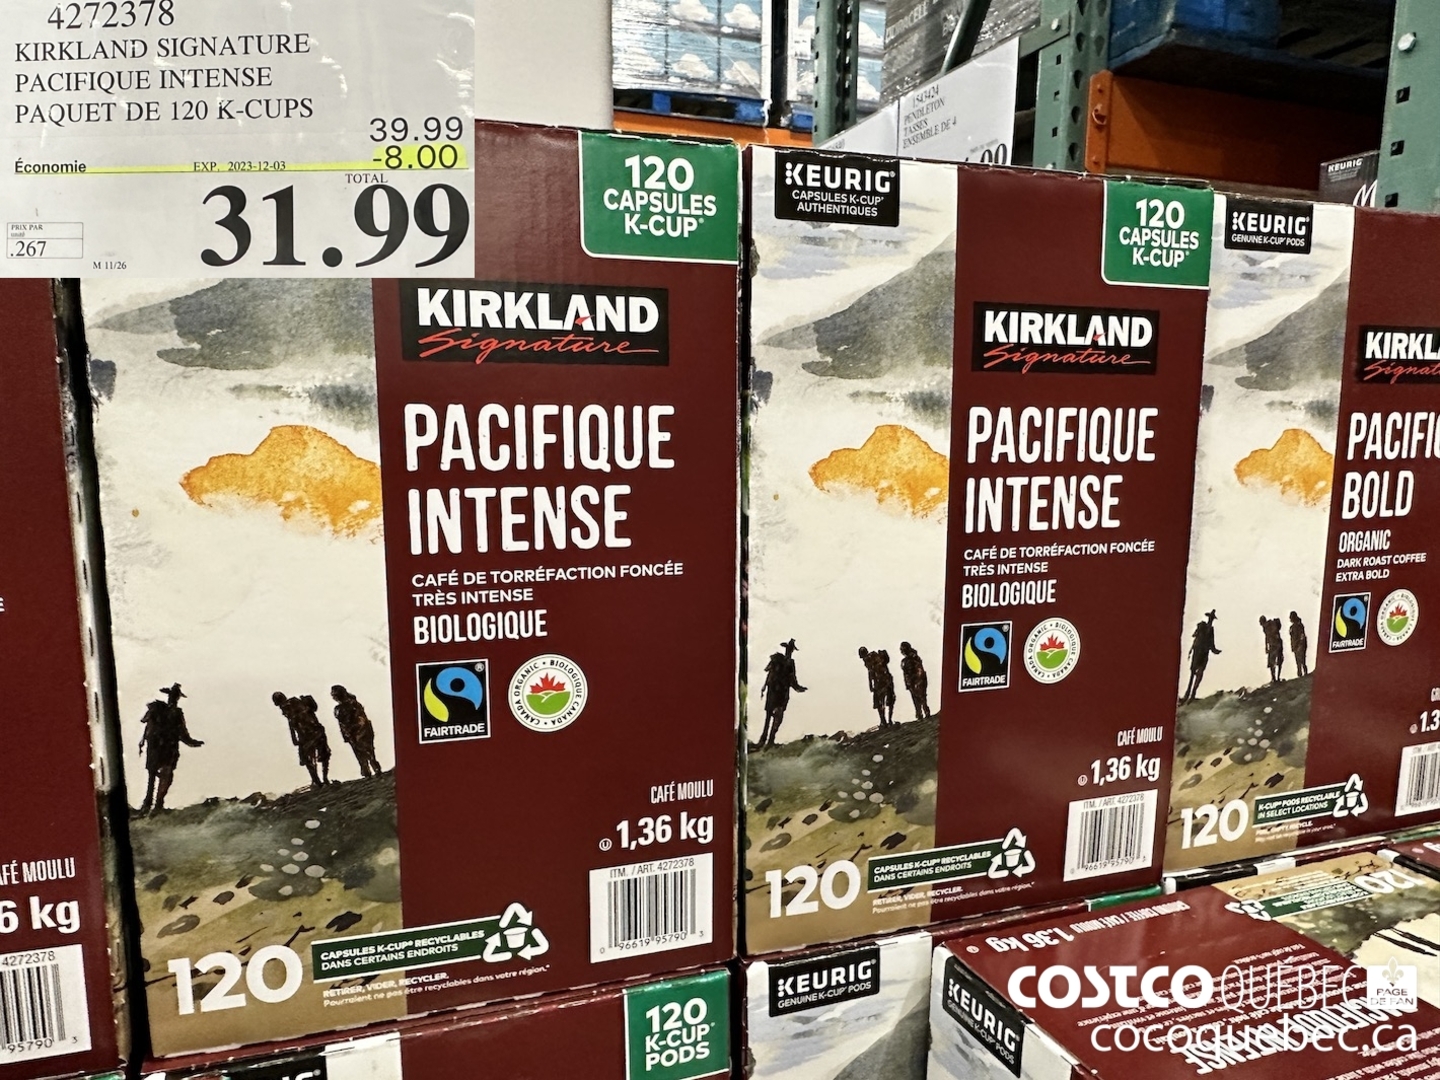 Ventes de circulaires Costco/Costco Flyer Sales du 17- 21 avril - Costco  Quebec Fan Blog